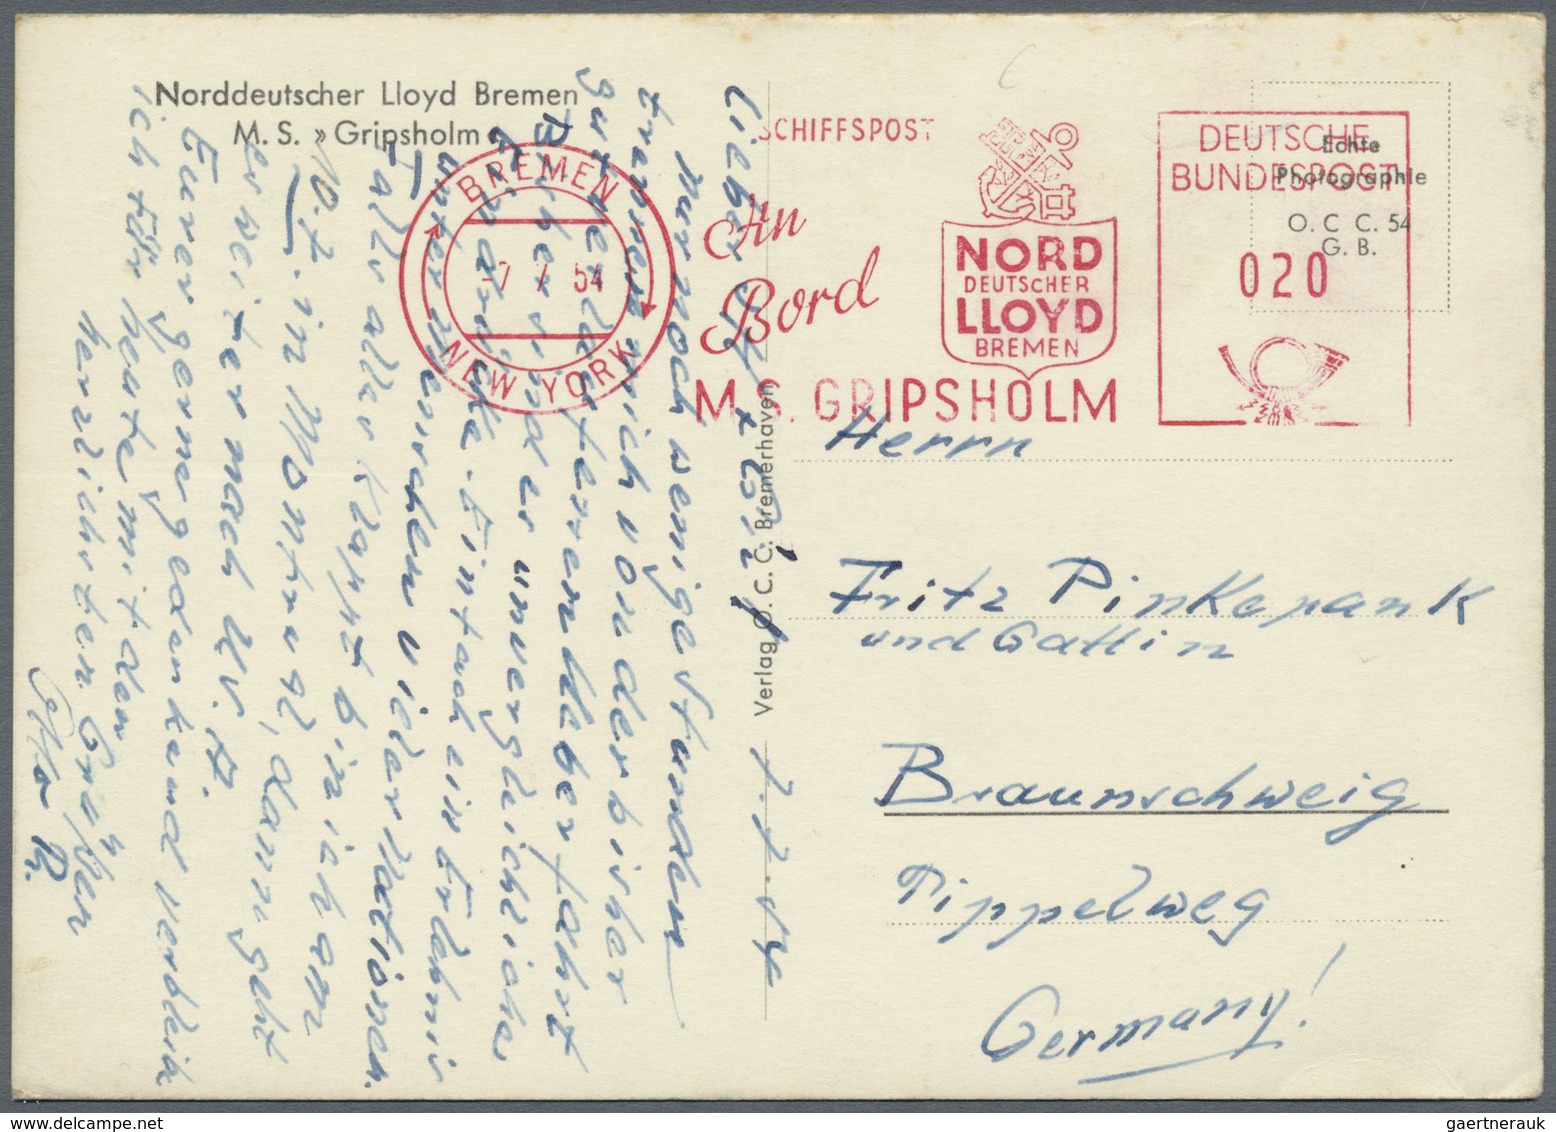 Schiffspost Deutschland: 1954: MS GRIPSHOLM Norddeutscher Lloyd Bremen -> New York, 07.07.1954, Abse - Brieven En Documenten